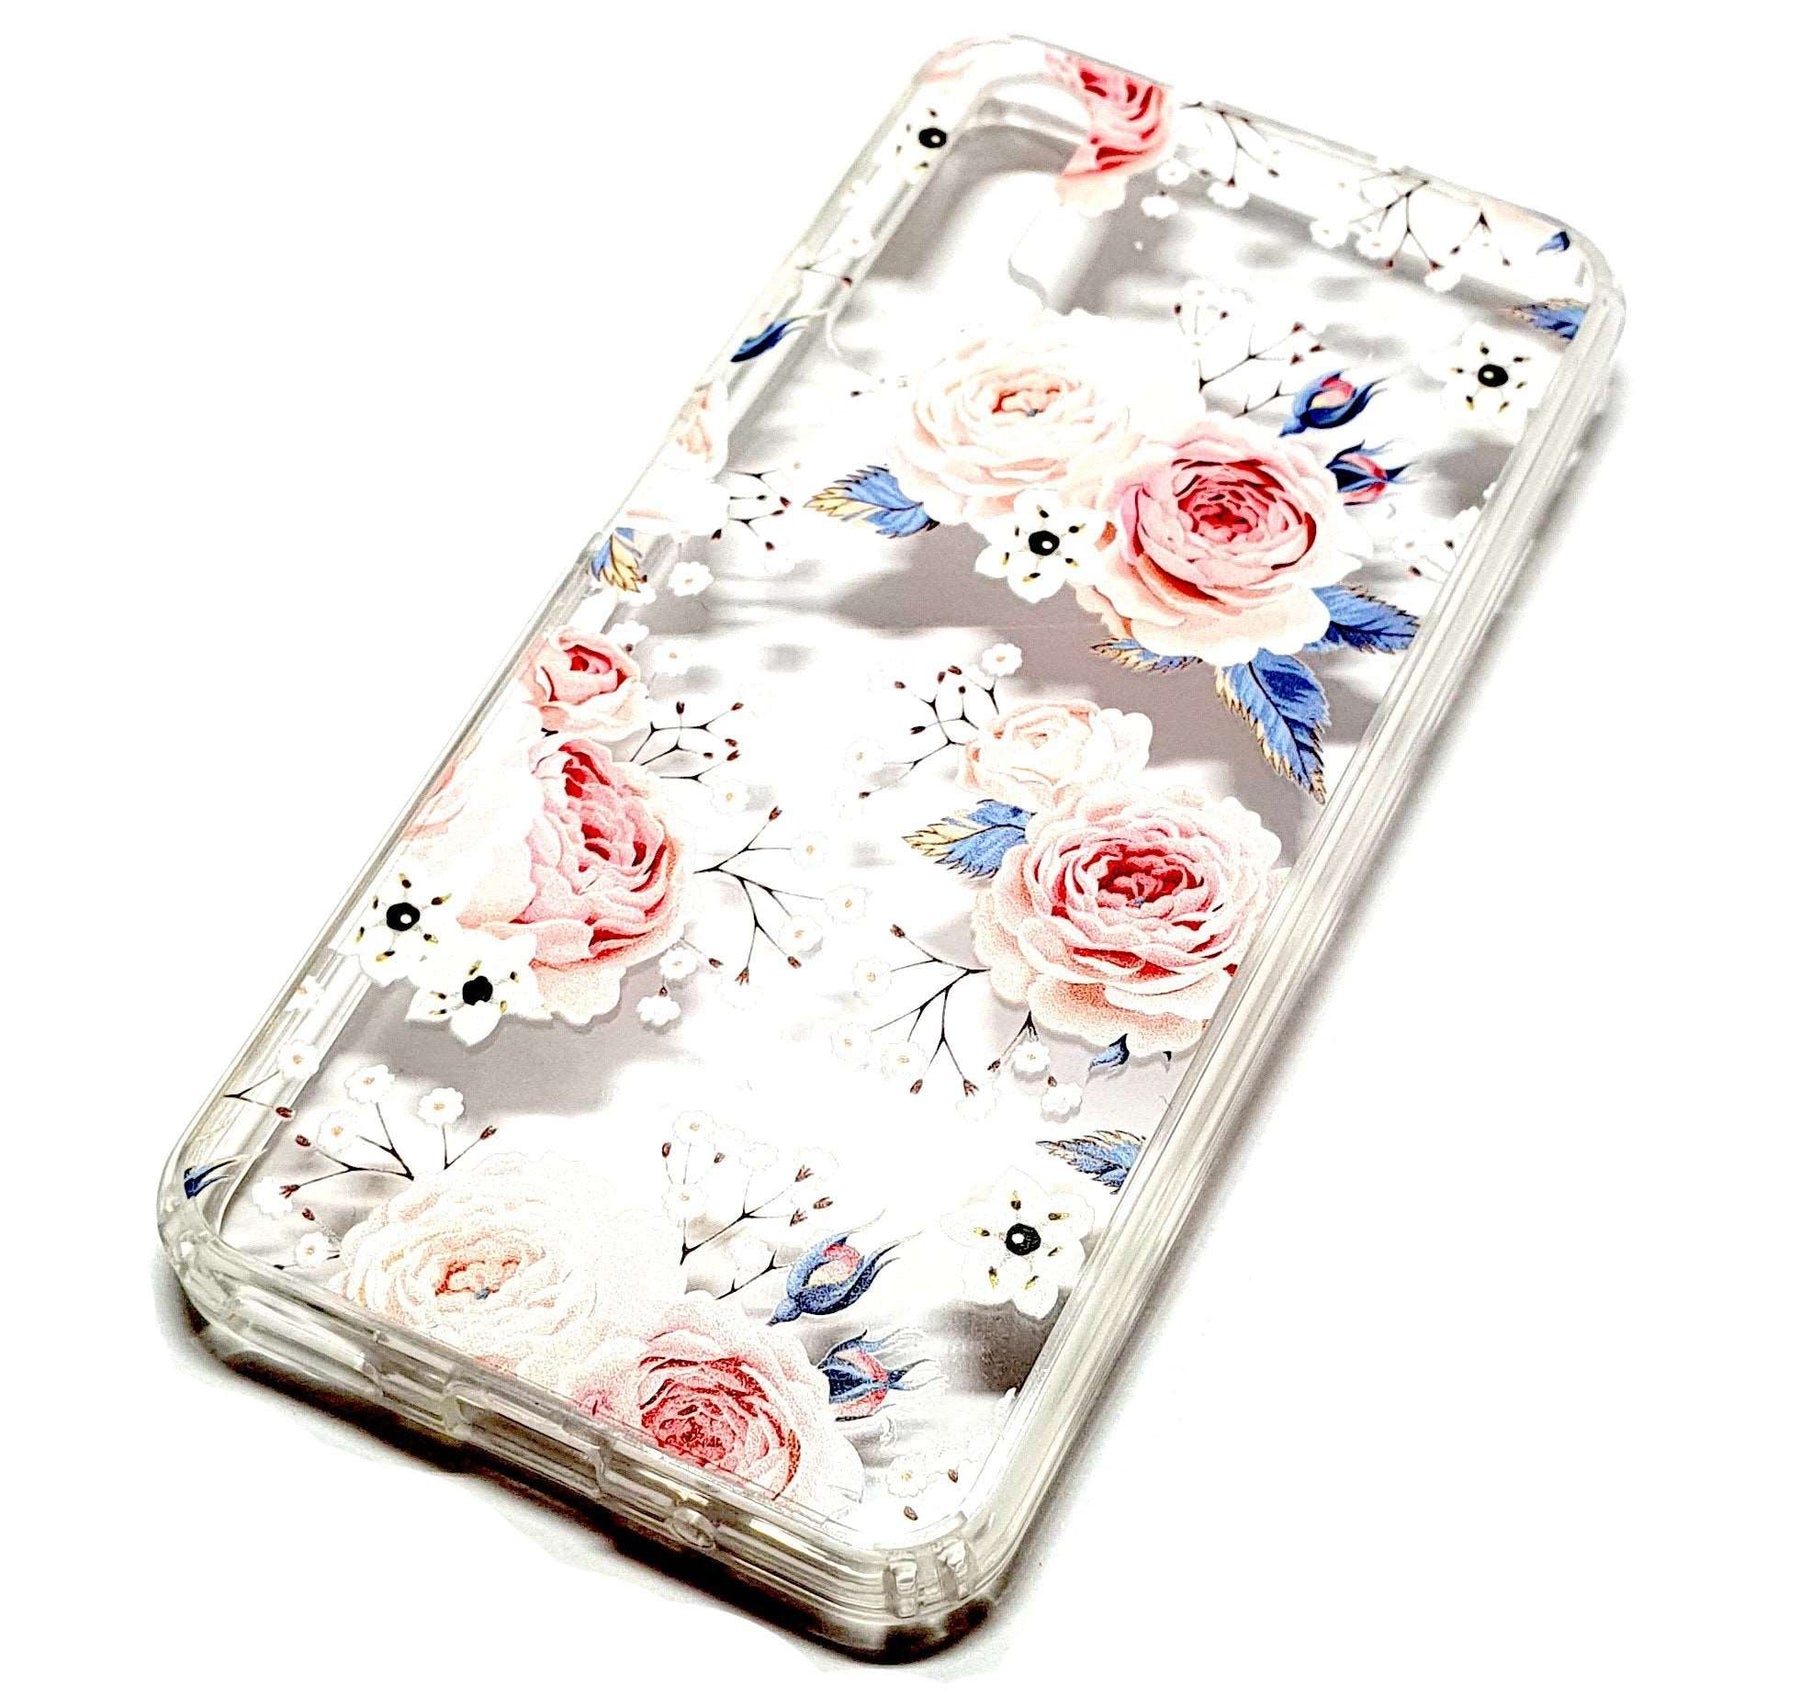 Huawei Nova 5T decorative clear transparent phone case roses